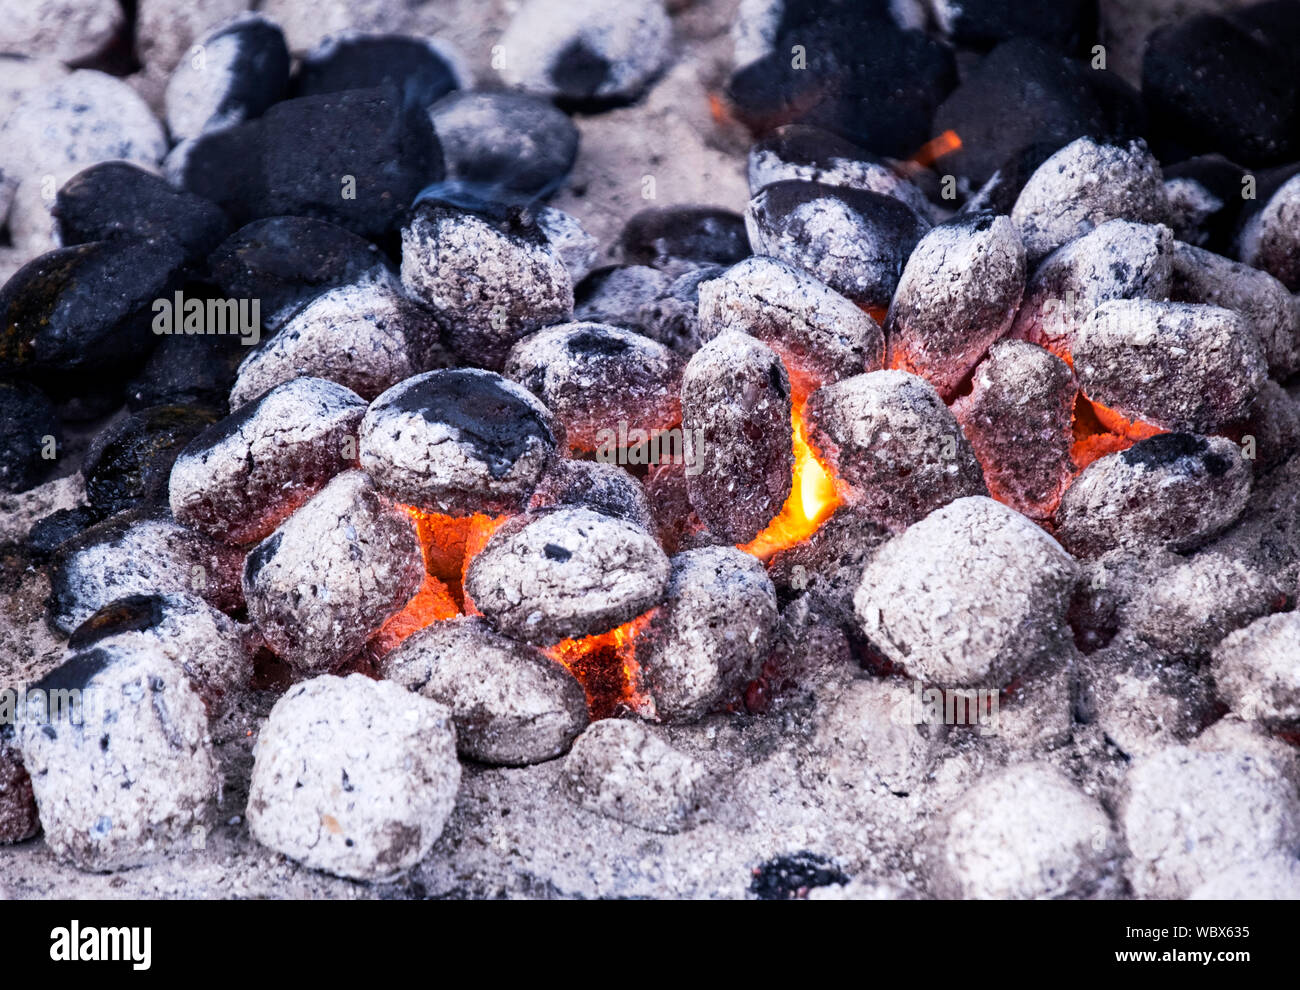 Los carbones ardiendo y calentamiento para barbacoa Foto de stock